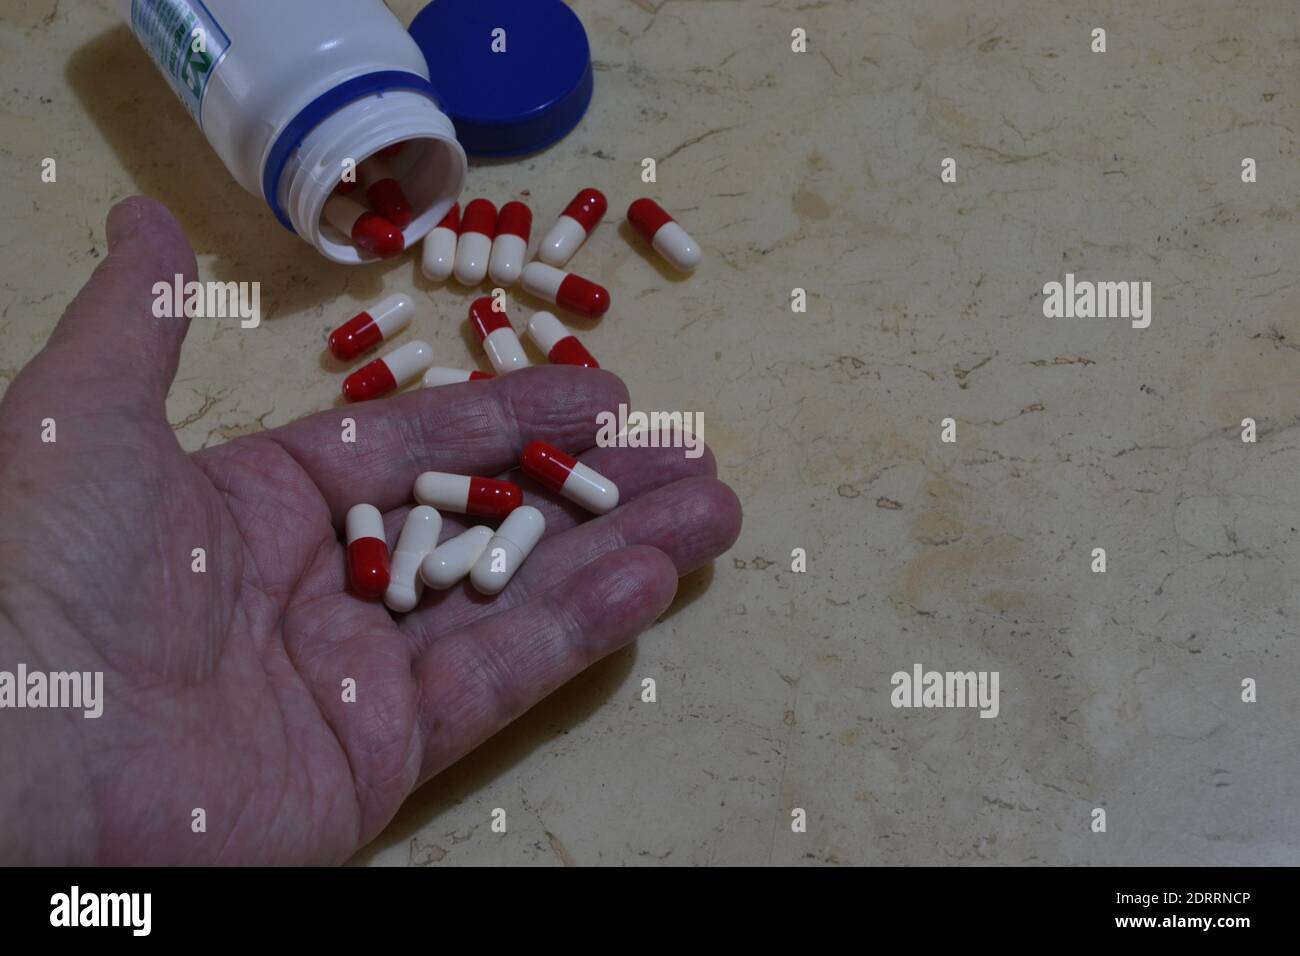 Uomo anziano con una manciata di pillole da prendere per il trattamento, vaso di pillole rosse e bianche su sfondo di marmo, Brasile, Sud America Foto Stock